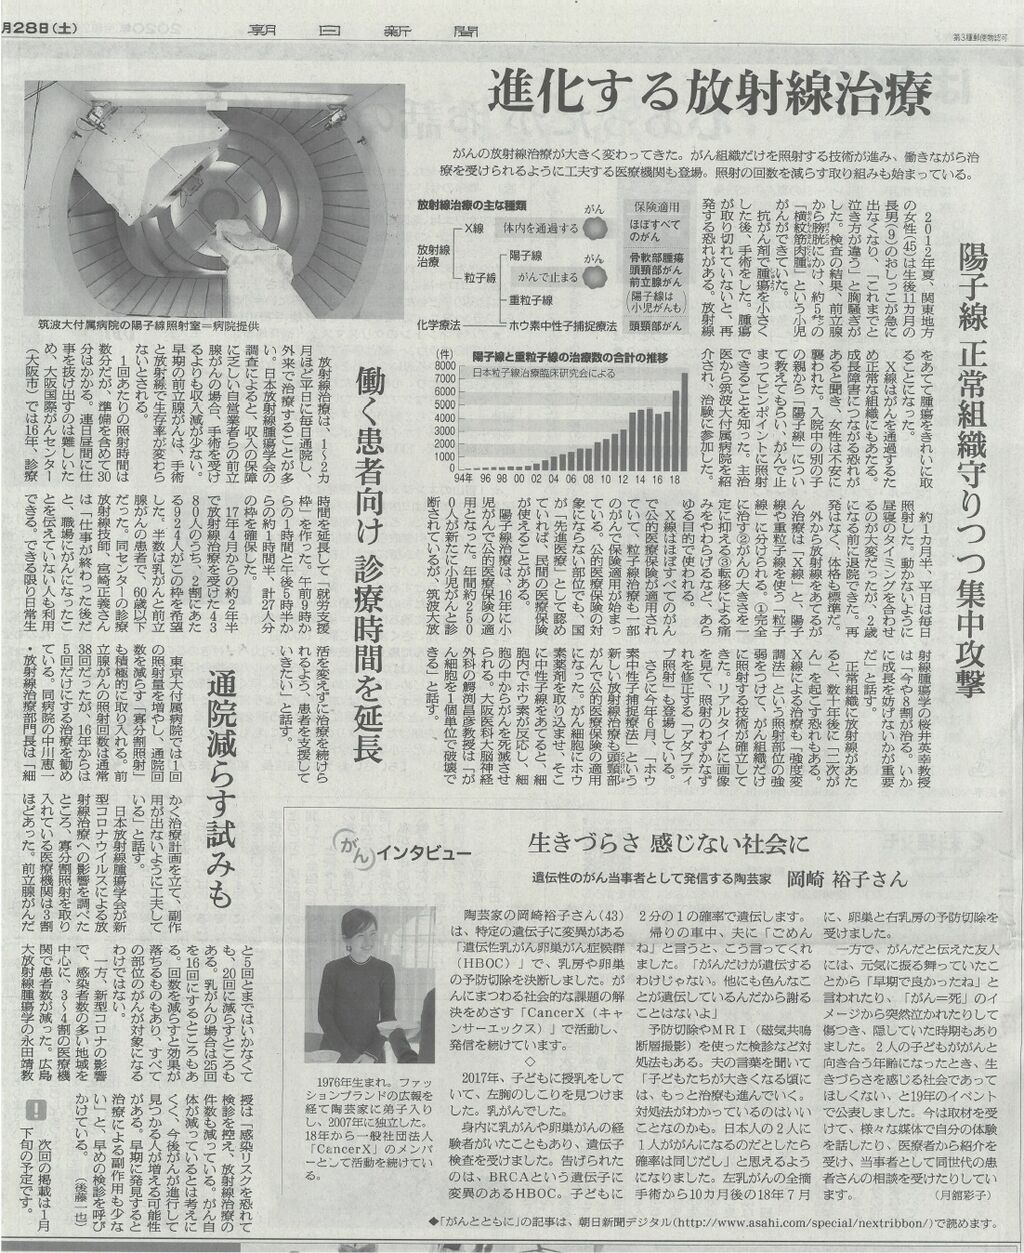 朝日新聞記事 進化する放射線治療 放射線治療科からのお知らせ